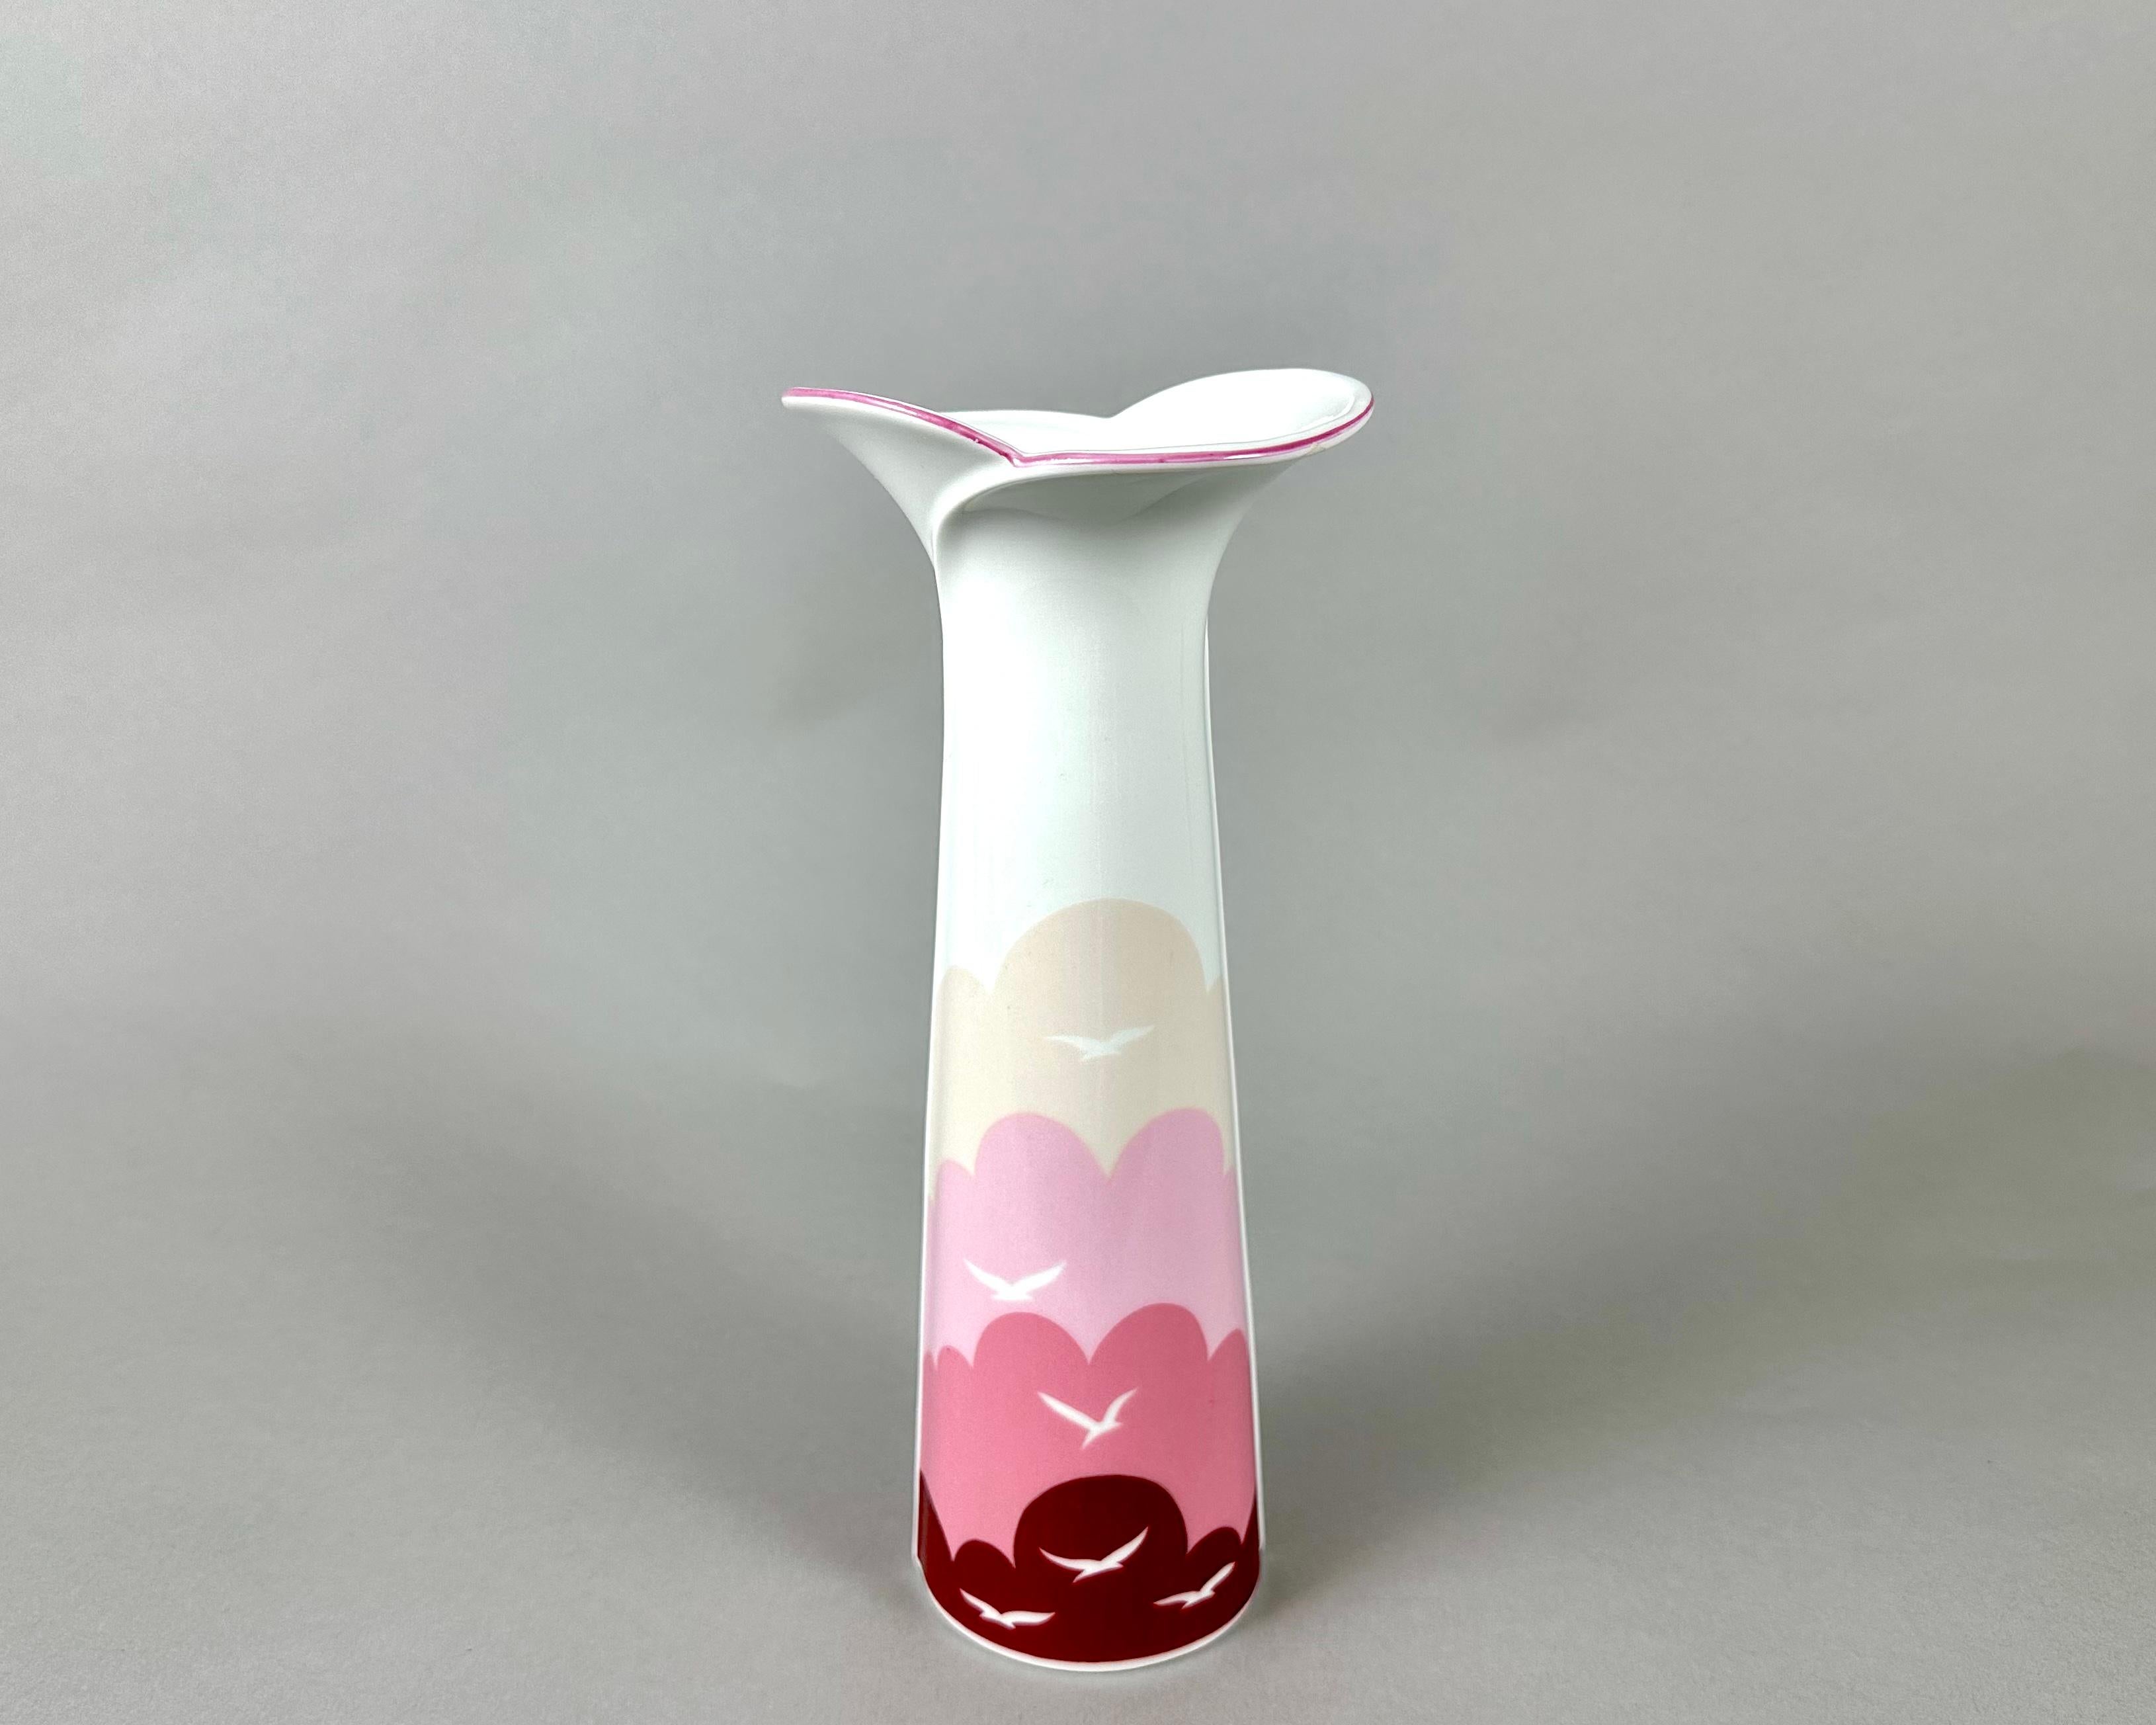 Schöne Vintage-Porzellan-Vase in weiß und rosa, Vögel Dekor von berühmten Hersteller Royal Porzellan Bayern. Deutschland. 1970s.

Die Vase wird ihre Besitzer lange Zeit mit ihrer Funktionalität und Schönheit erfreuen.

Eine tolle originelle